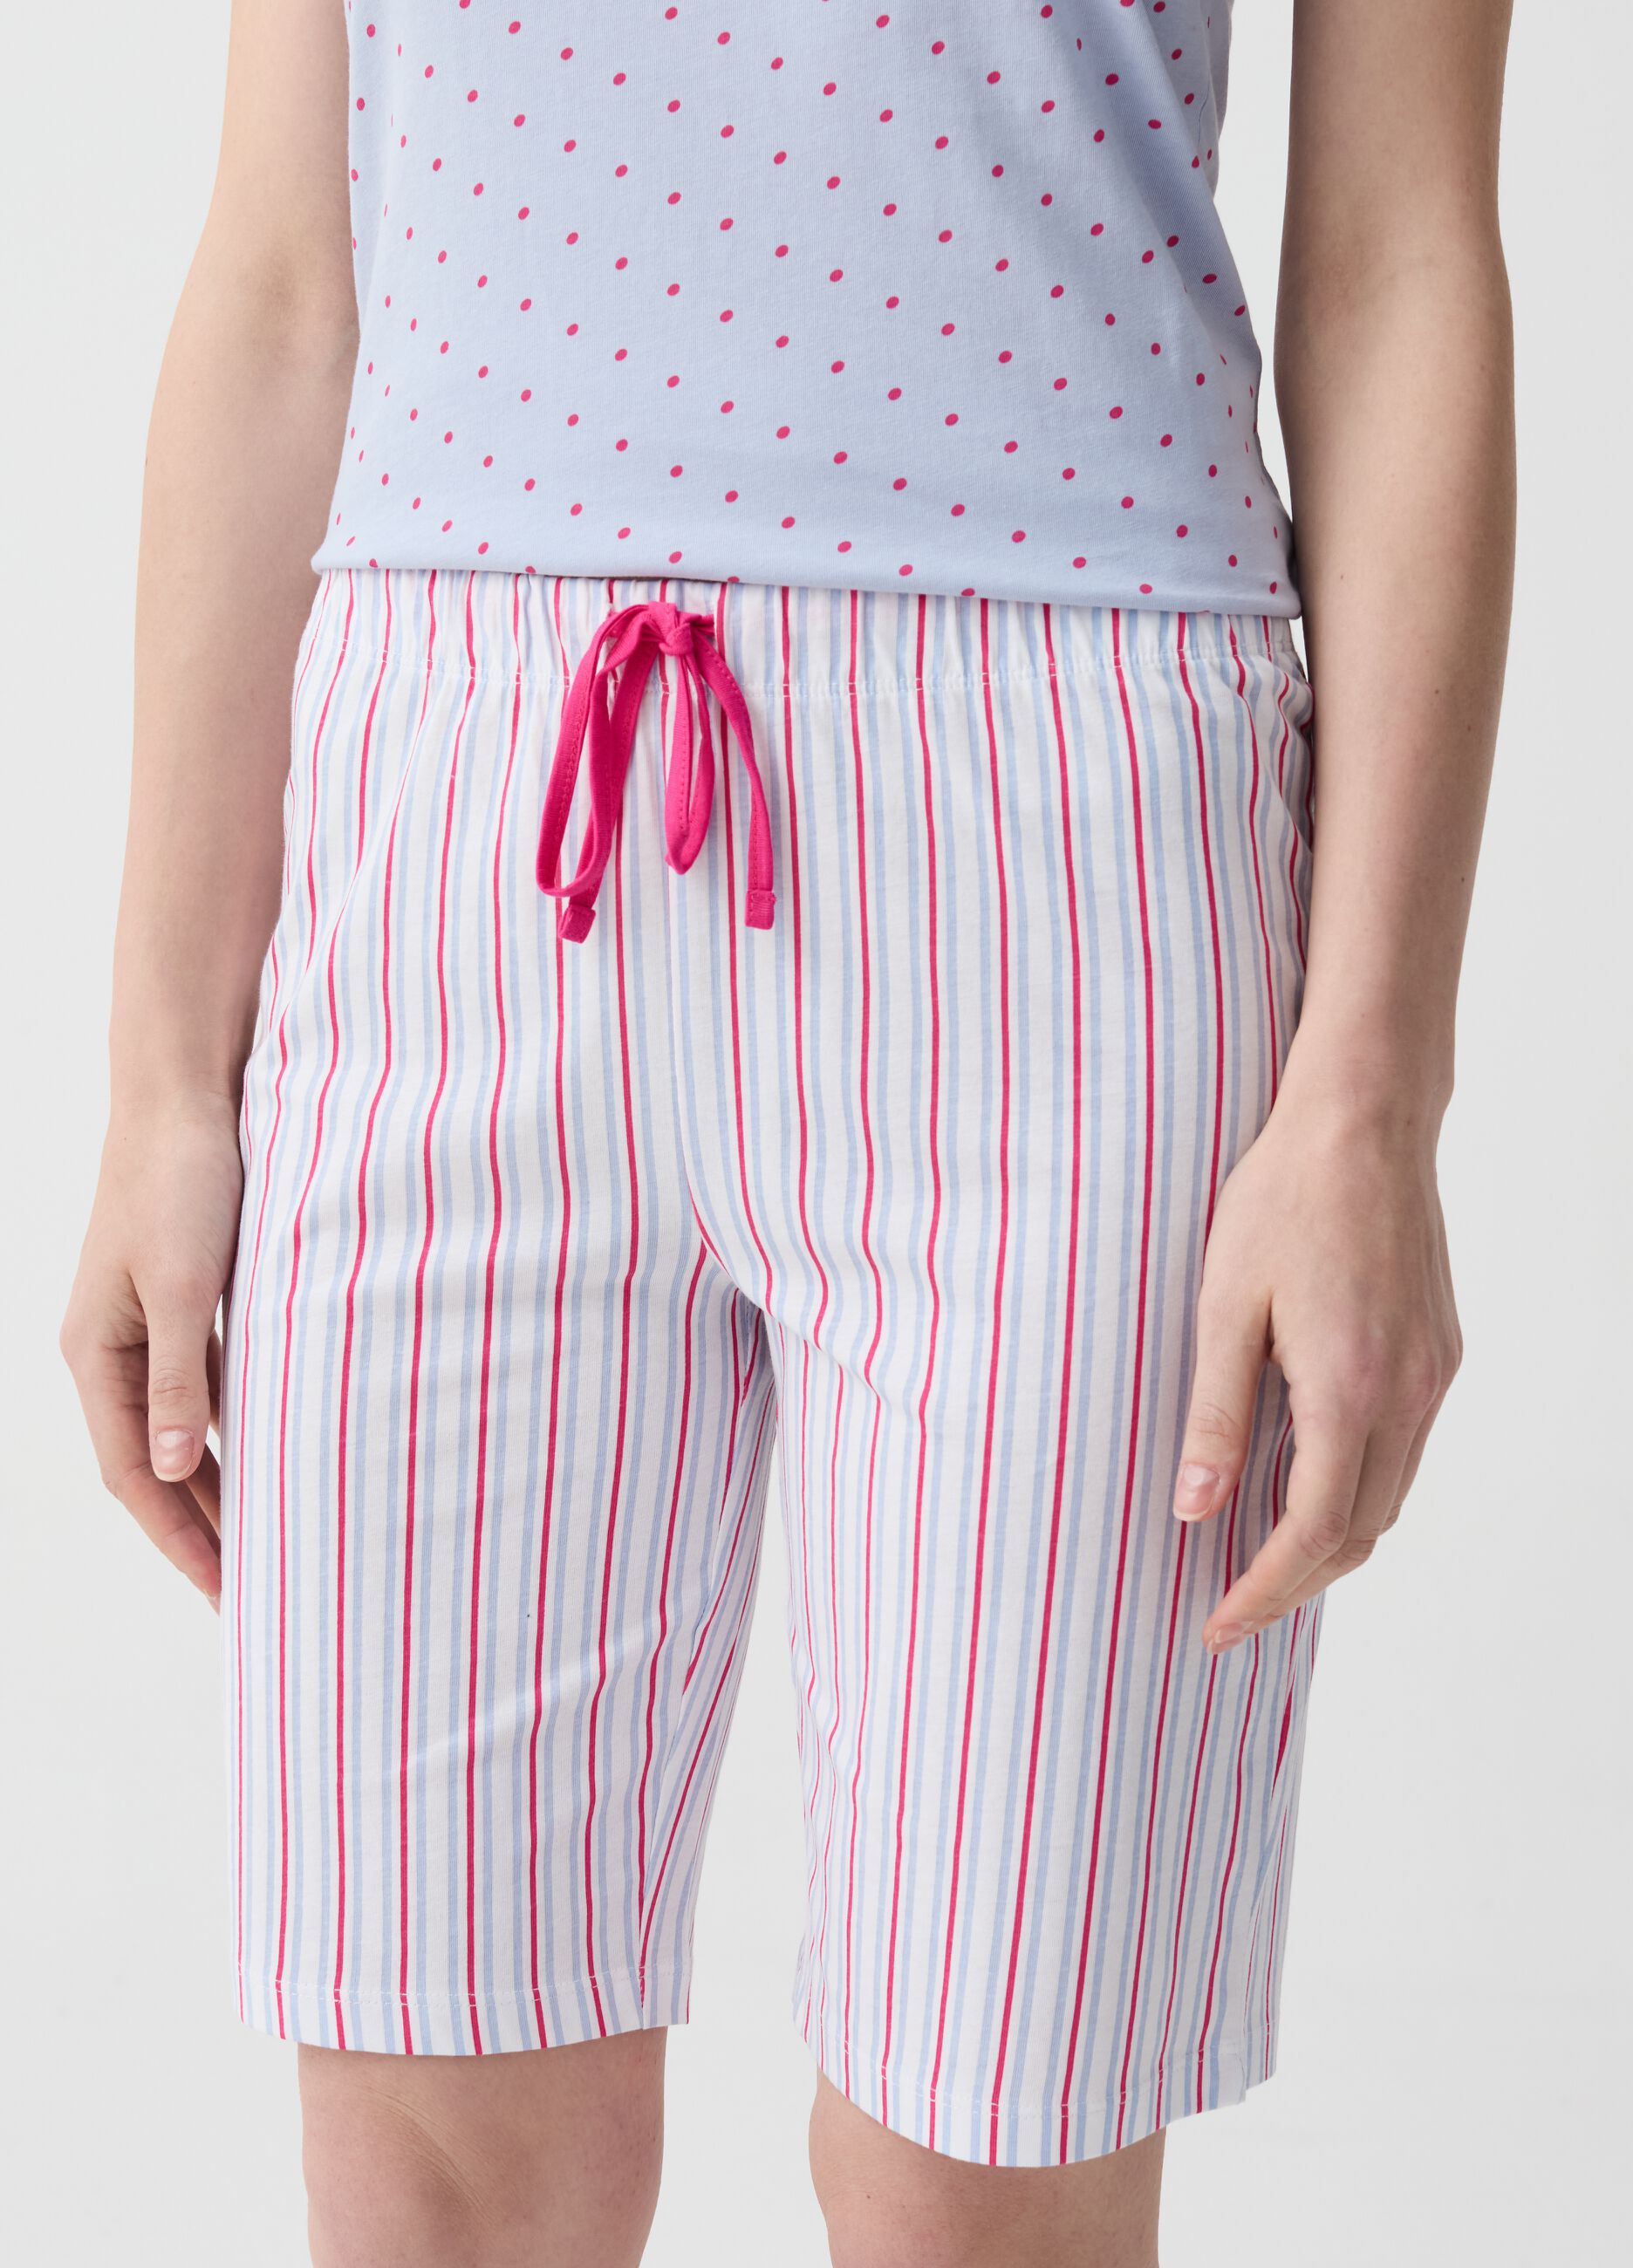 Pantalone pigiama corto a righe multicolore